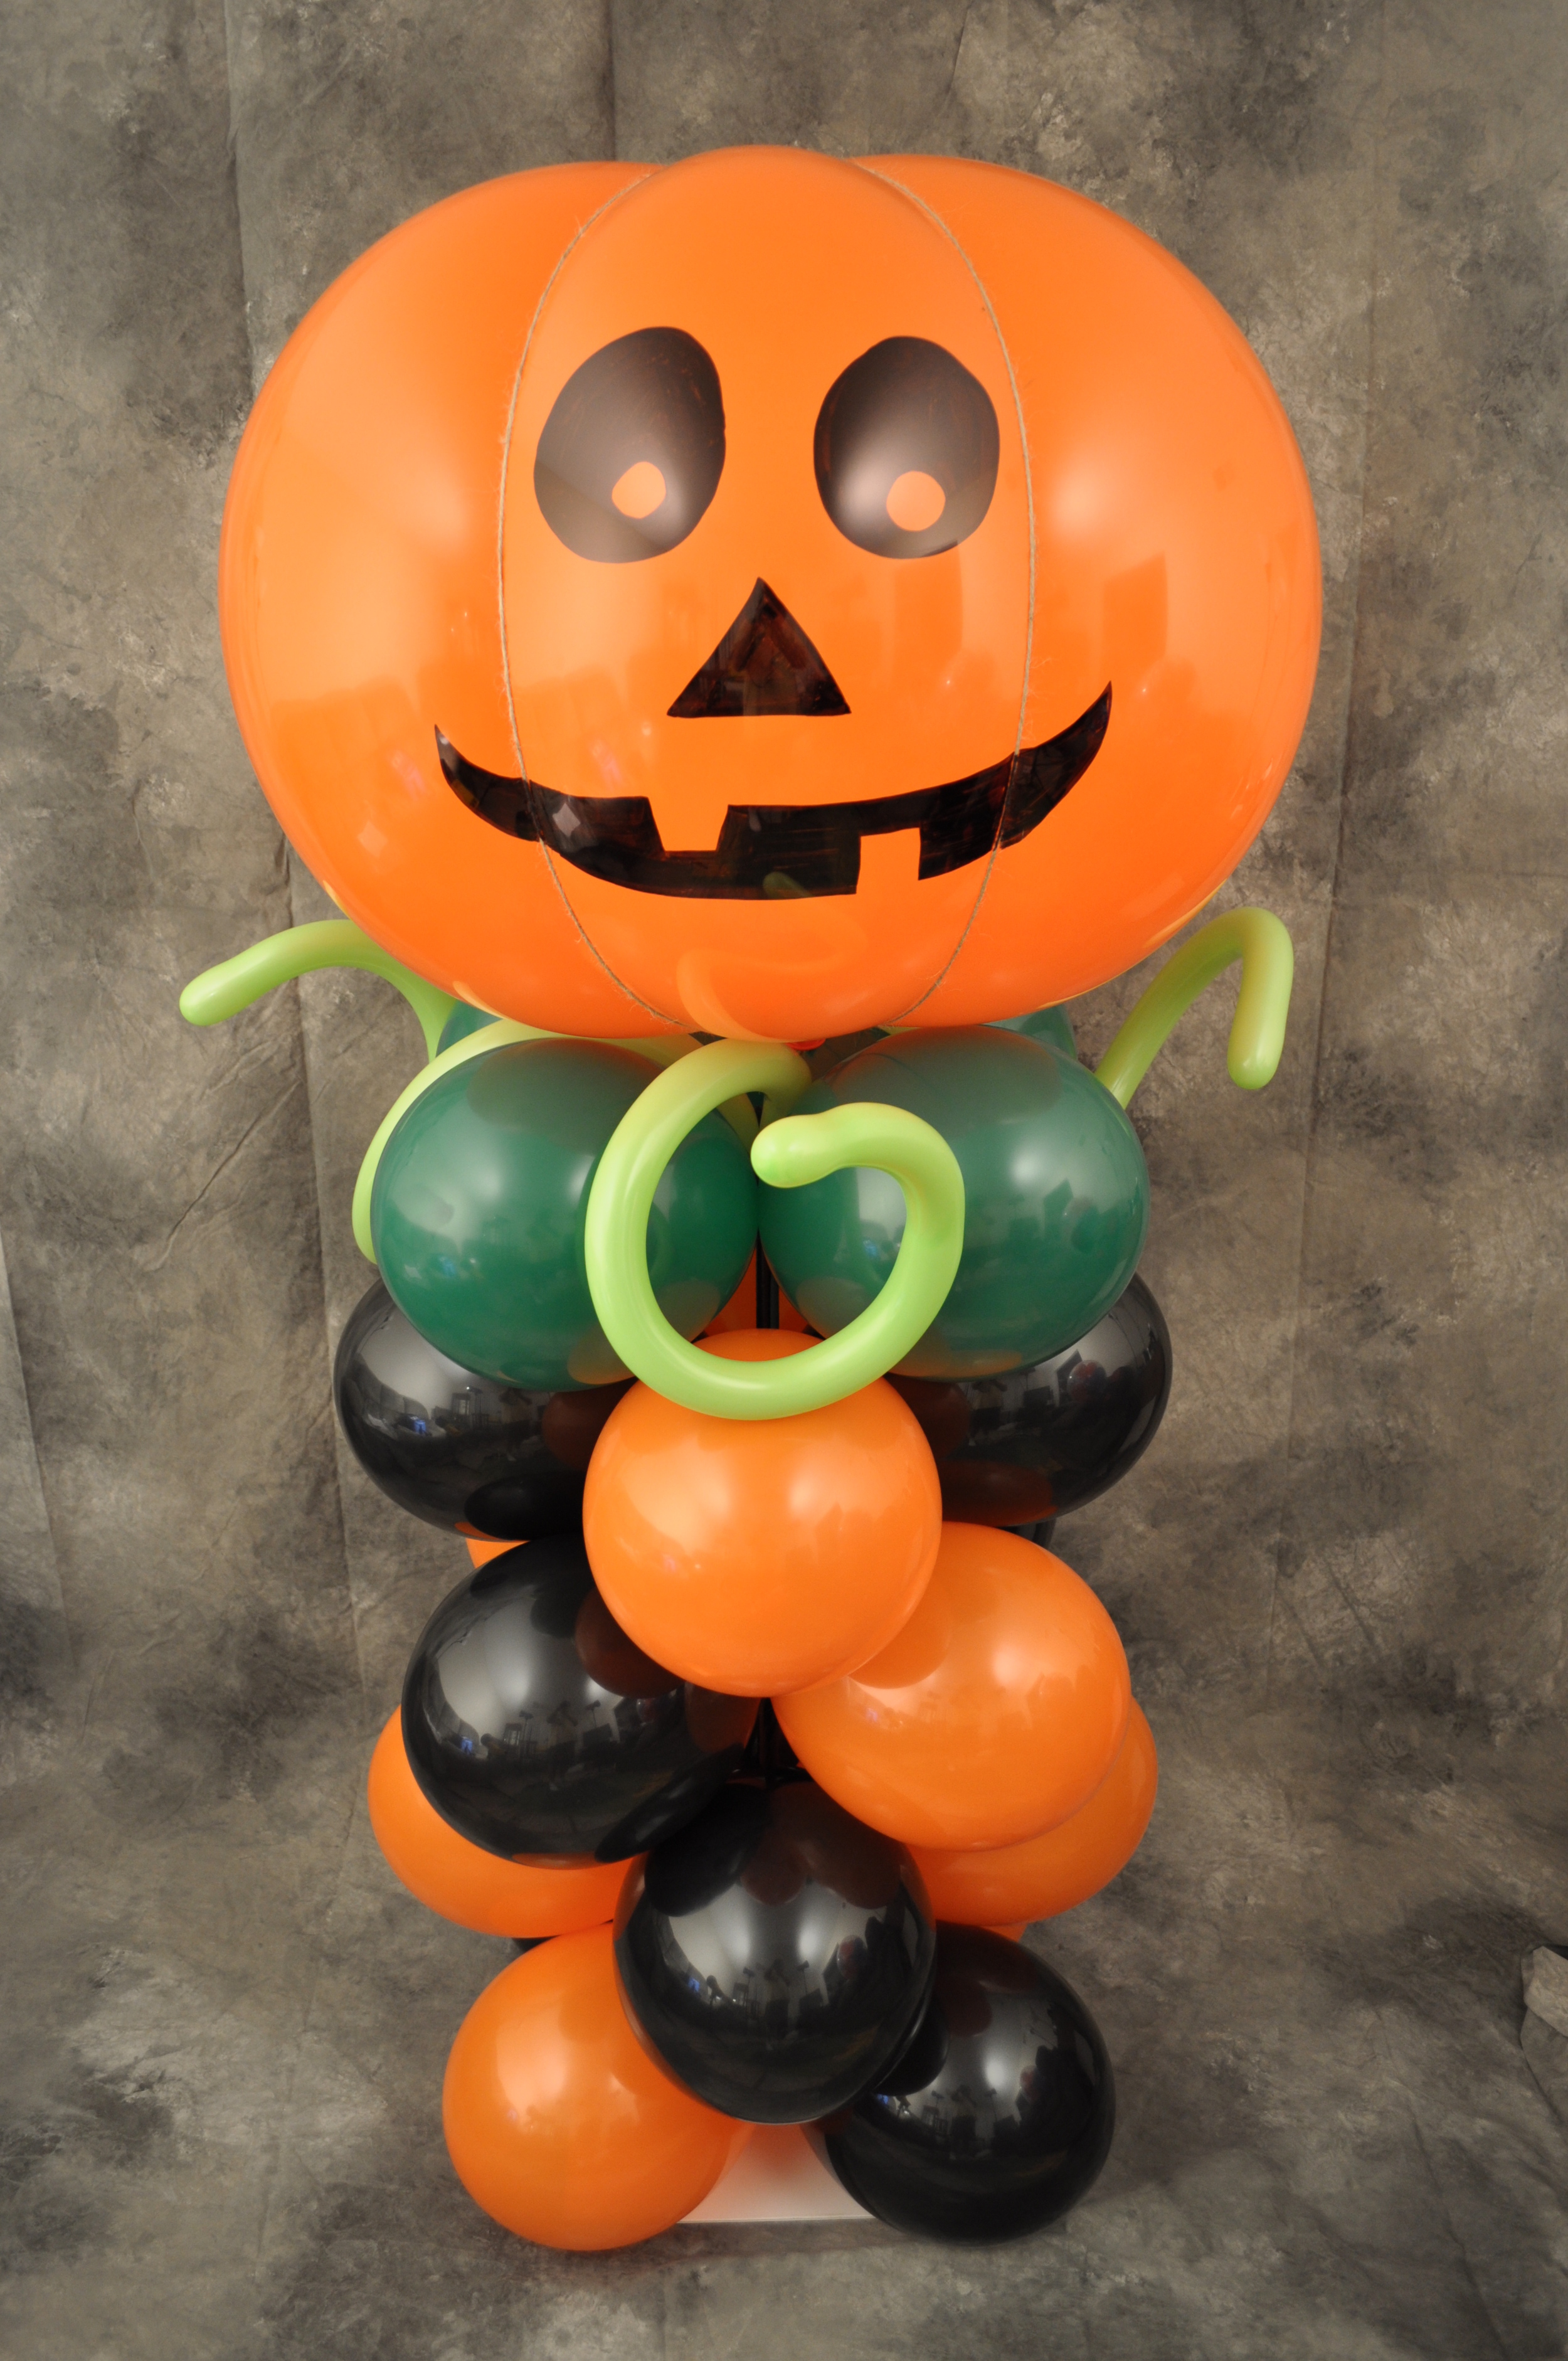 pumpkin-Halloween-balloon-column.jpg